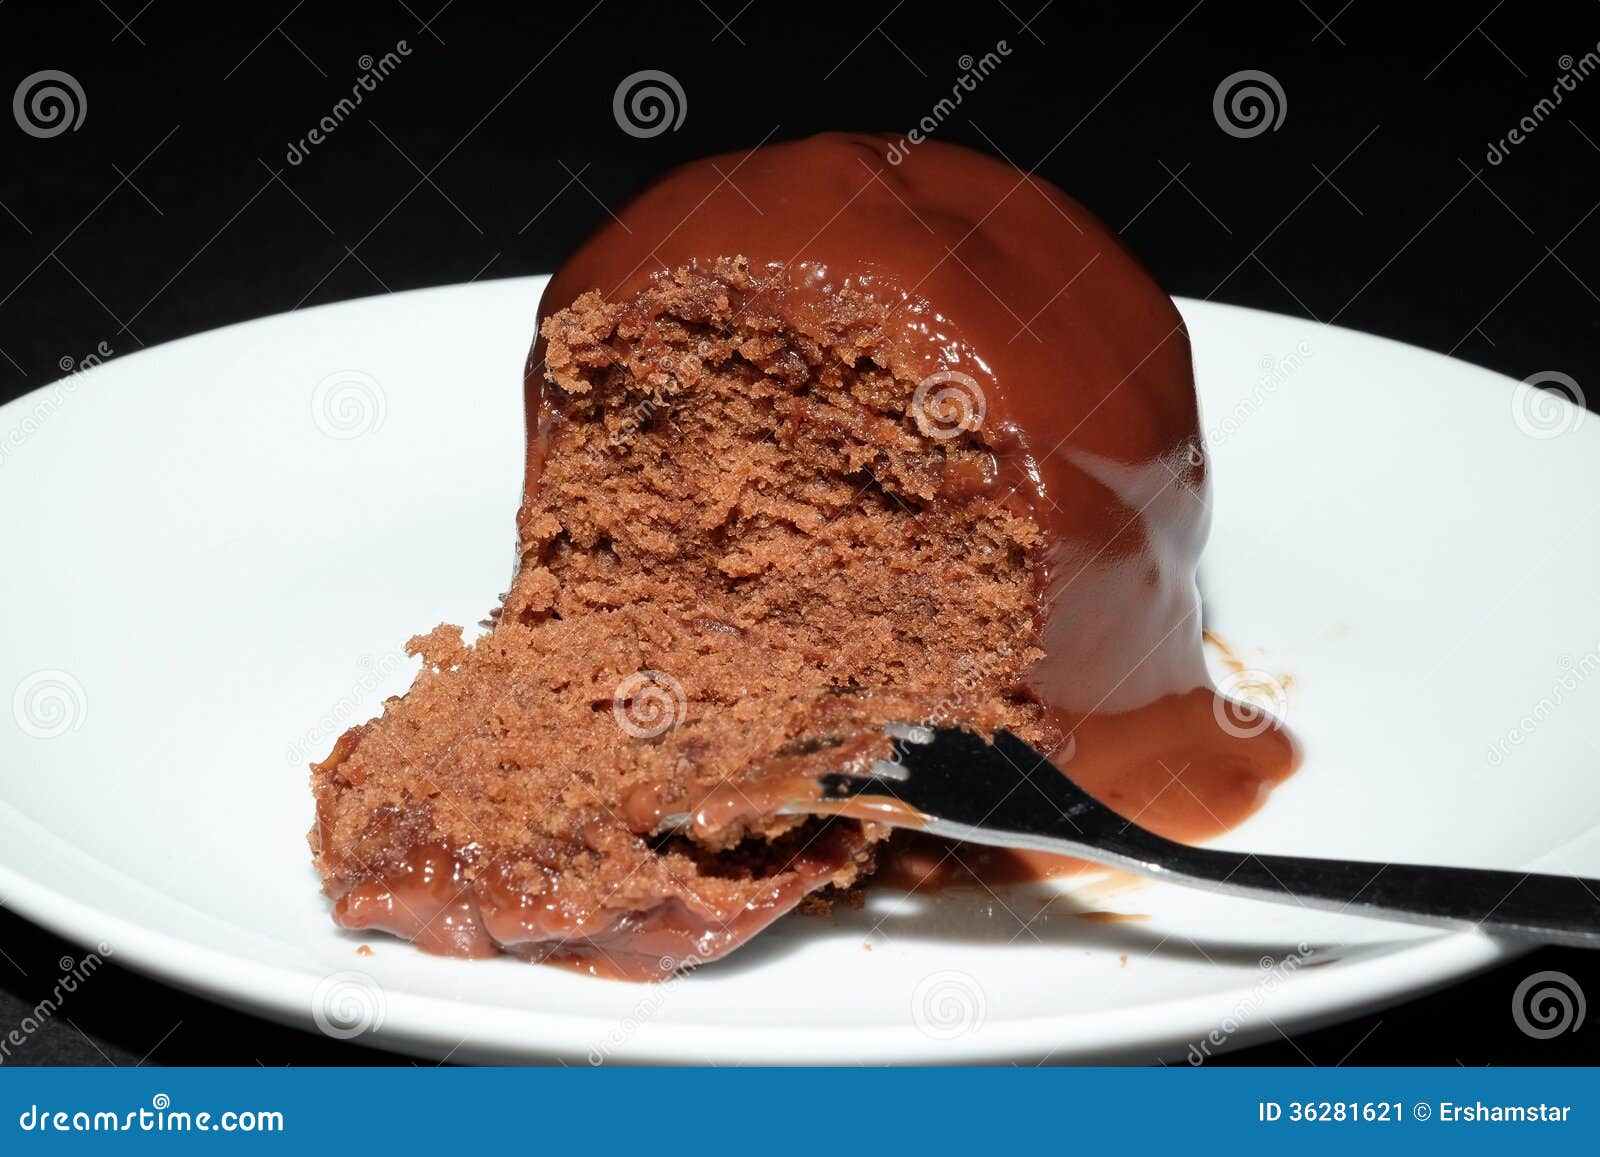 桌上美味巧克力海绵蛋糕的照片 库存照片. 图片 包括有 食谱, 面粉, 糖果, 牛奶, 新鲜, 咖啡, 英镑 - 229972124